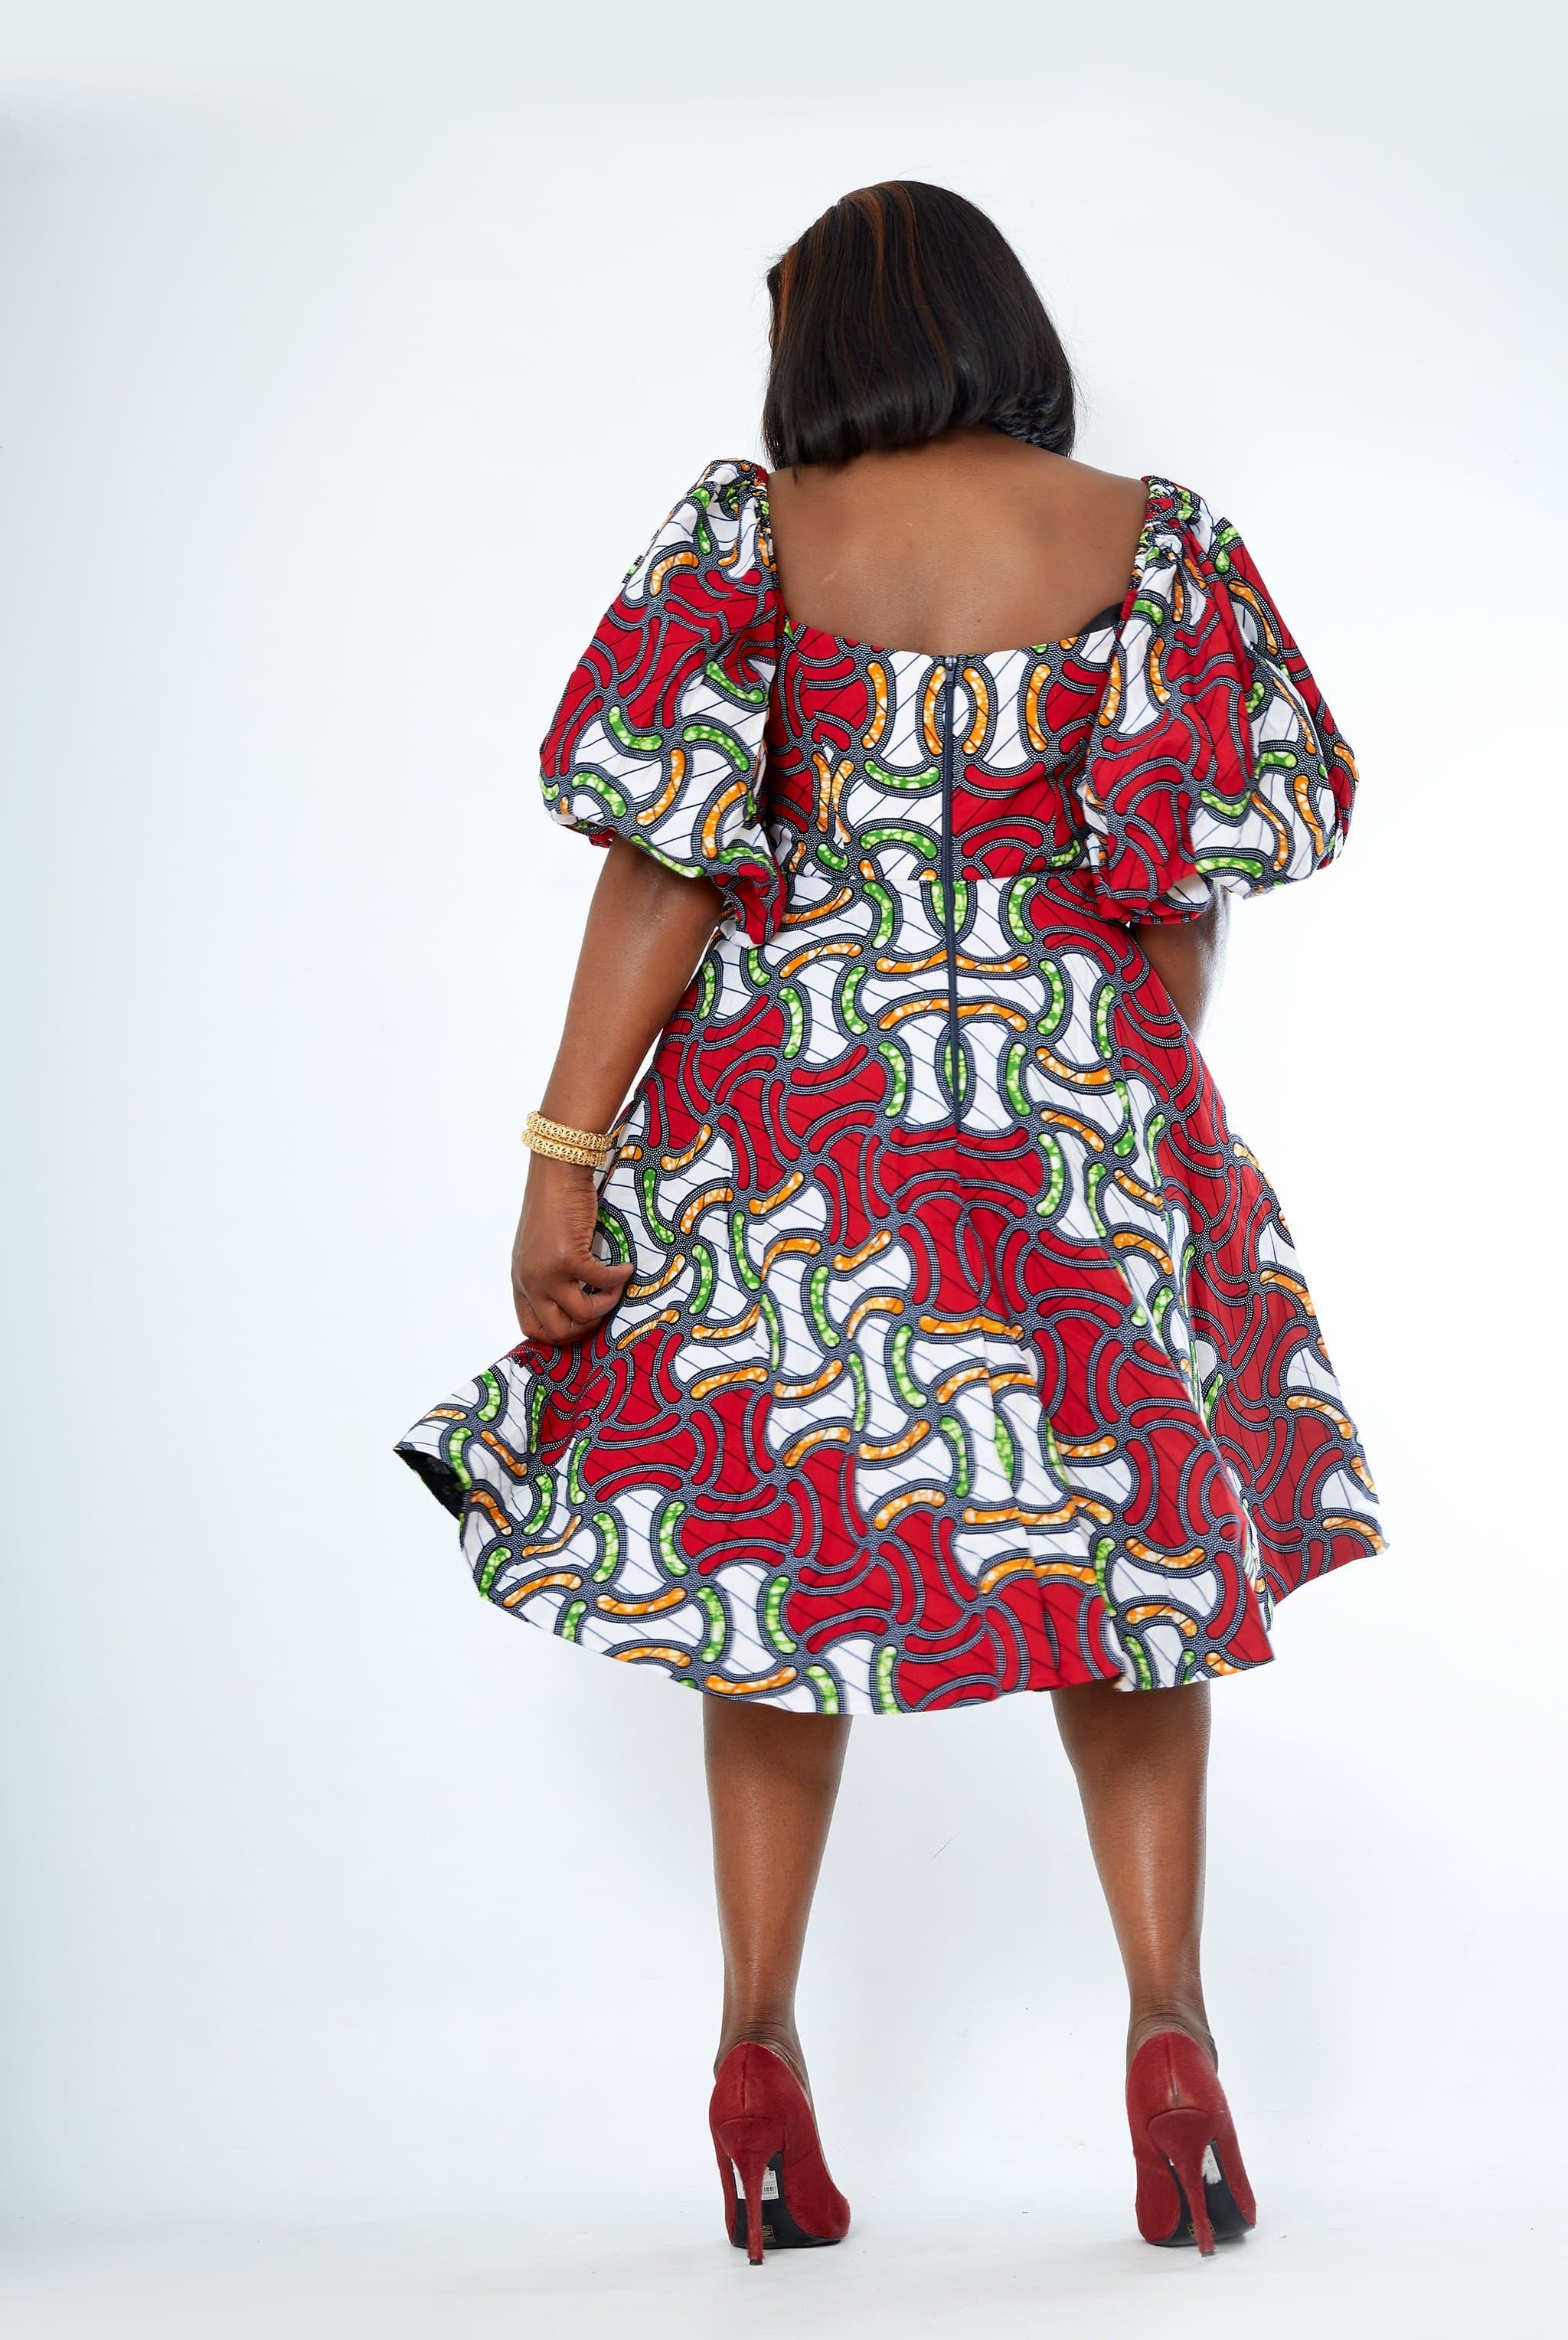 Ghana African dress | Kente Dress | African dress | African print Dress | African Clothing Online  Shop | Short African dress | Mini African dress UK | African  dress UK |  african dress styles | african women's clothing | african outfit | kitenge dresses | Africa Dresses for Women | Ankara Styles for ladies | African dresses for work | Danshiki Dress | Trendy African Dress | Modern African Clothing | Modern African dress UK | African clothing UK | Black-owned fashion brand | UK Based African Fashion Brand